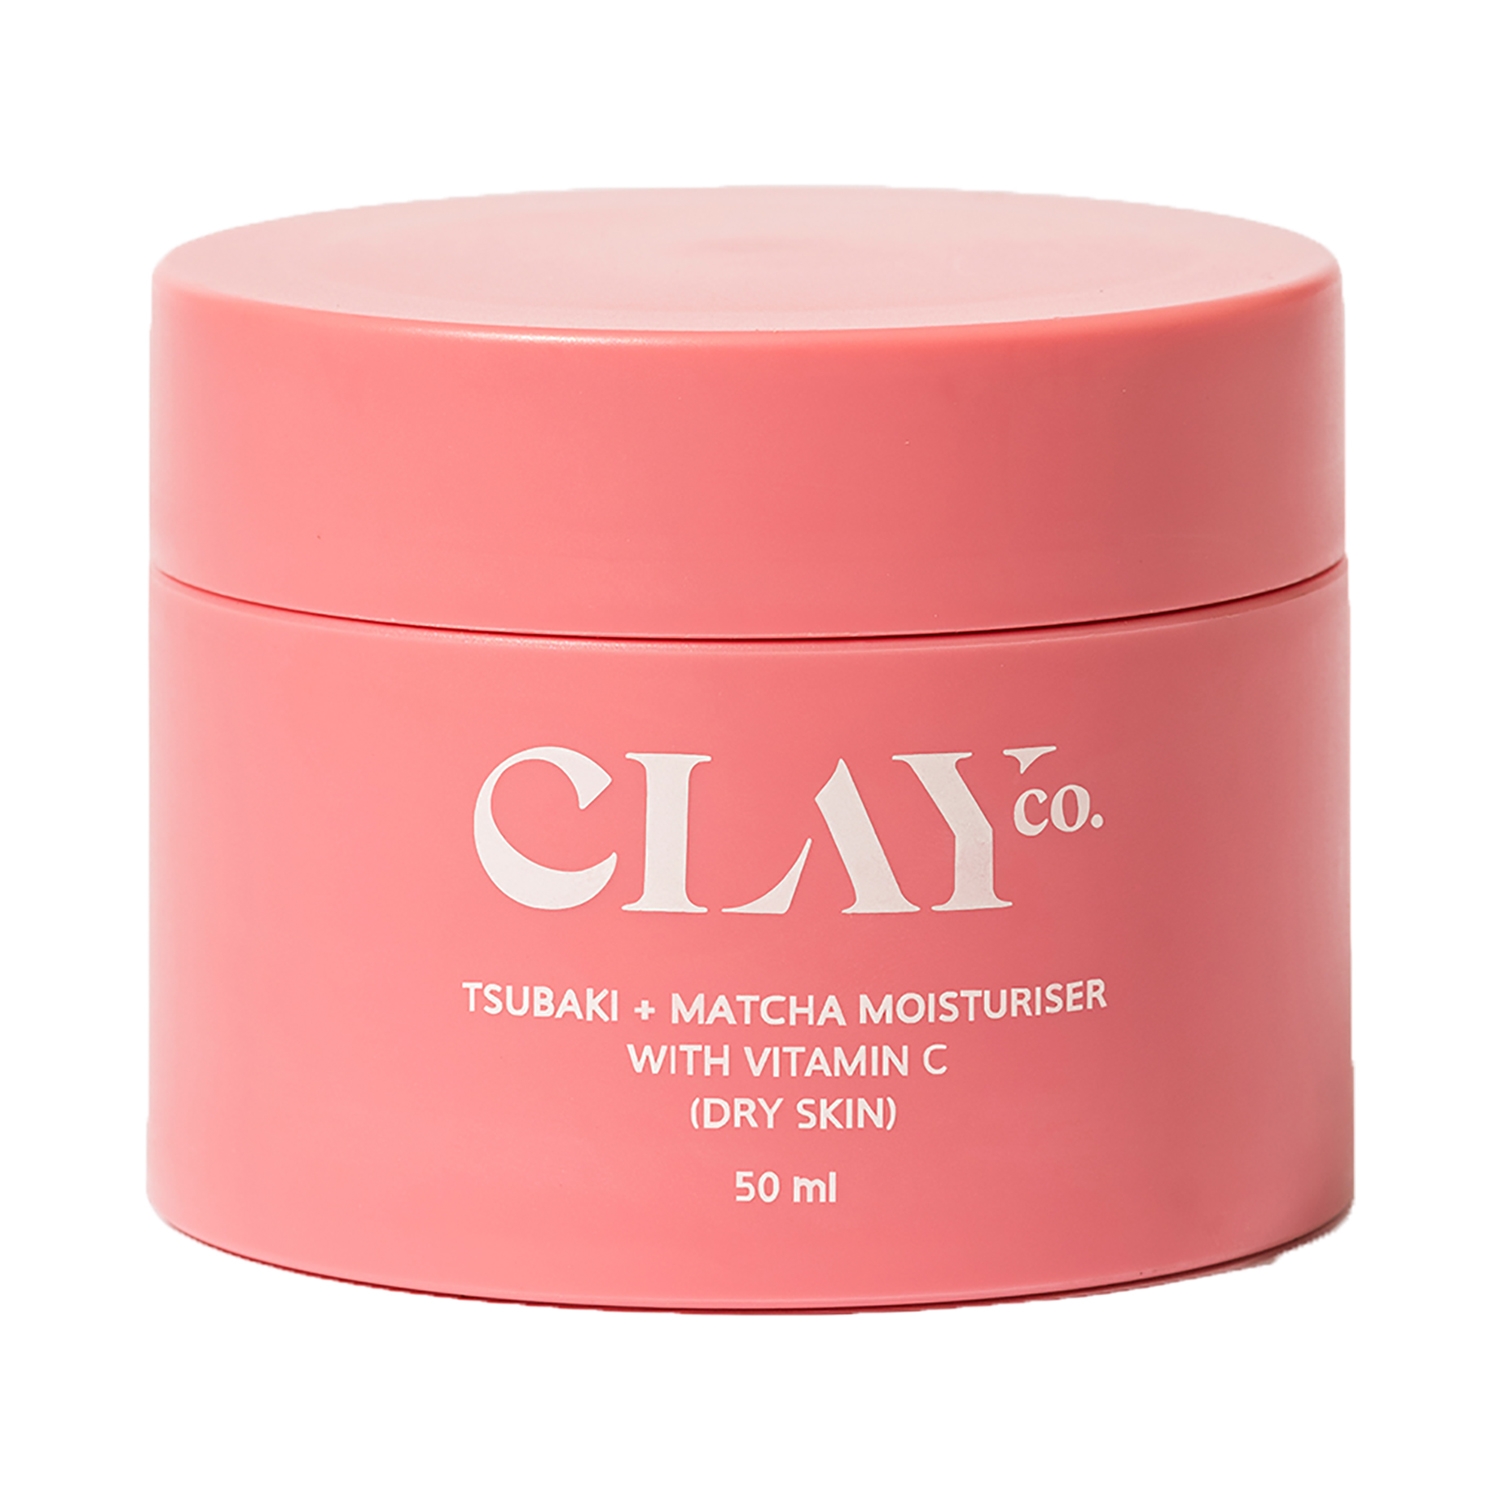 ClayCo | ClayCo Tsubaki + Matcha Moisturiser with Vitamin C For Dry Skin (50ml)